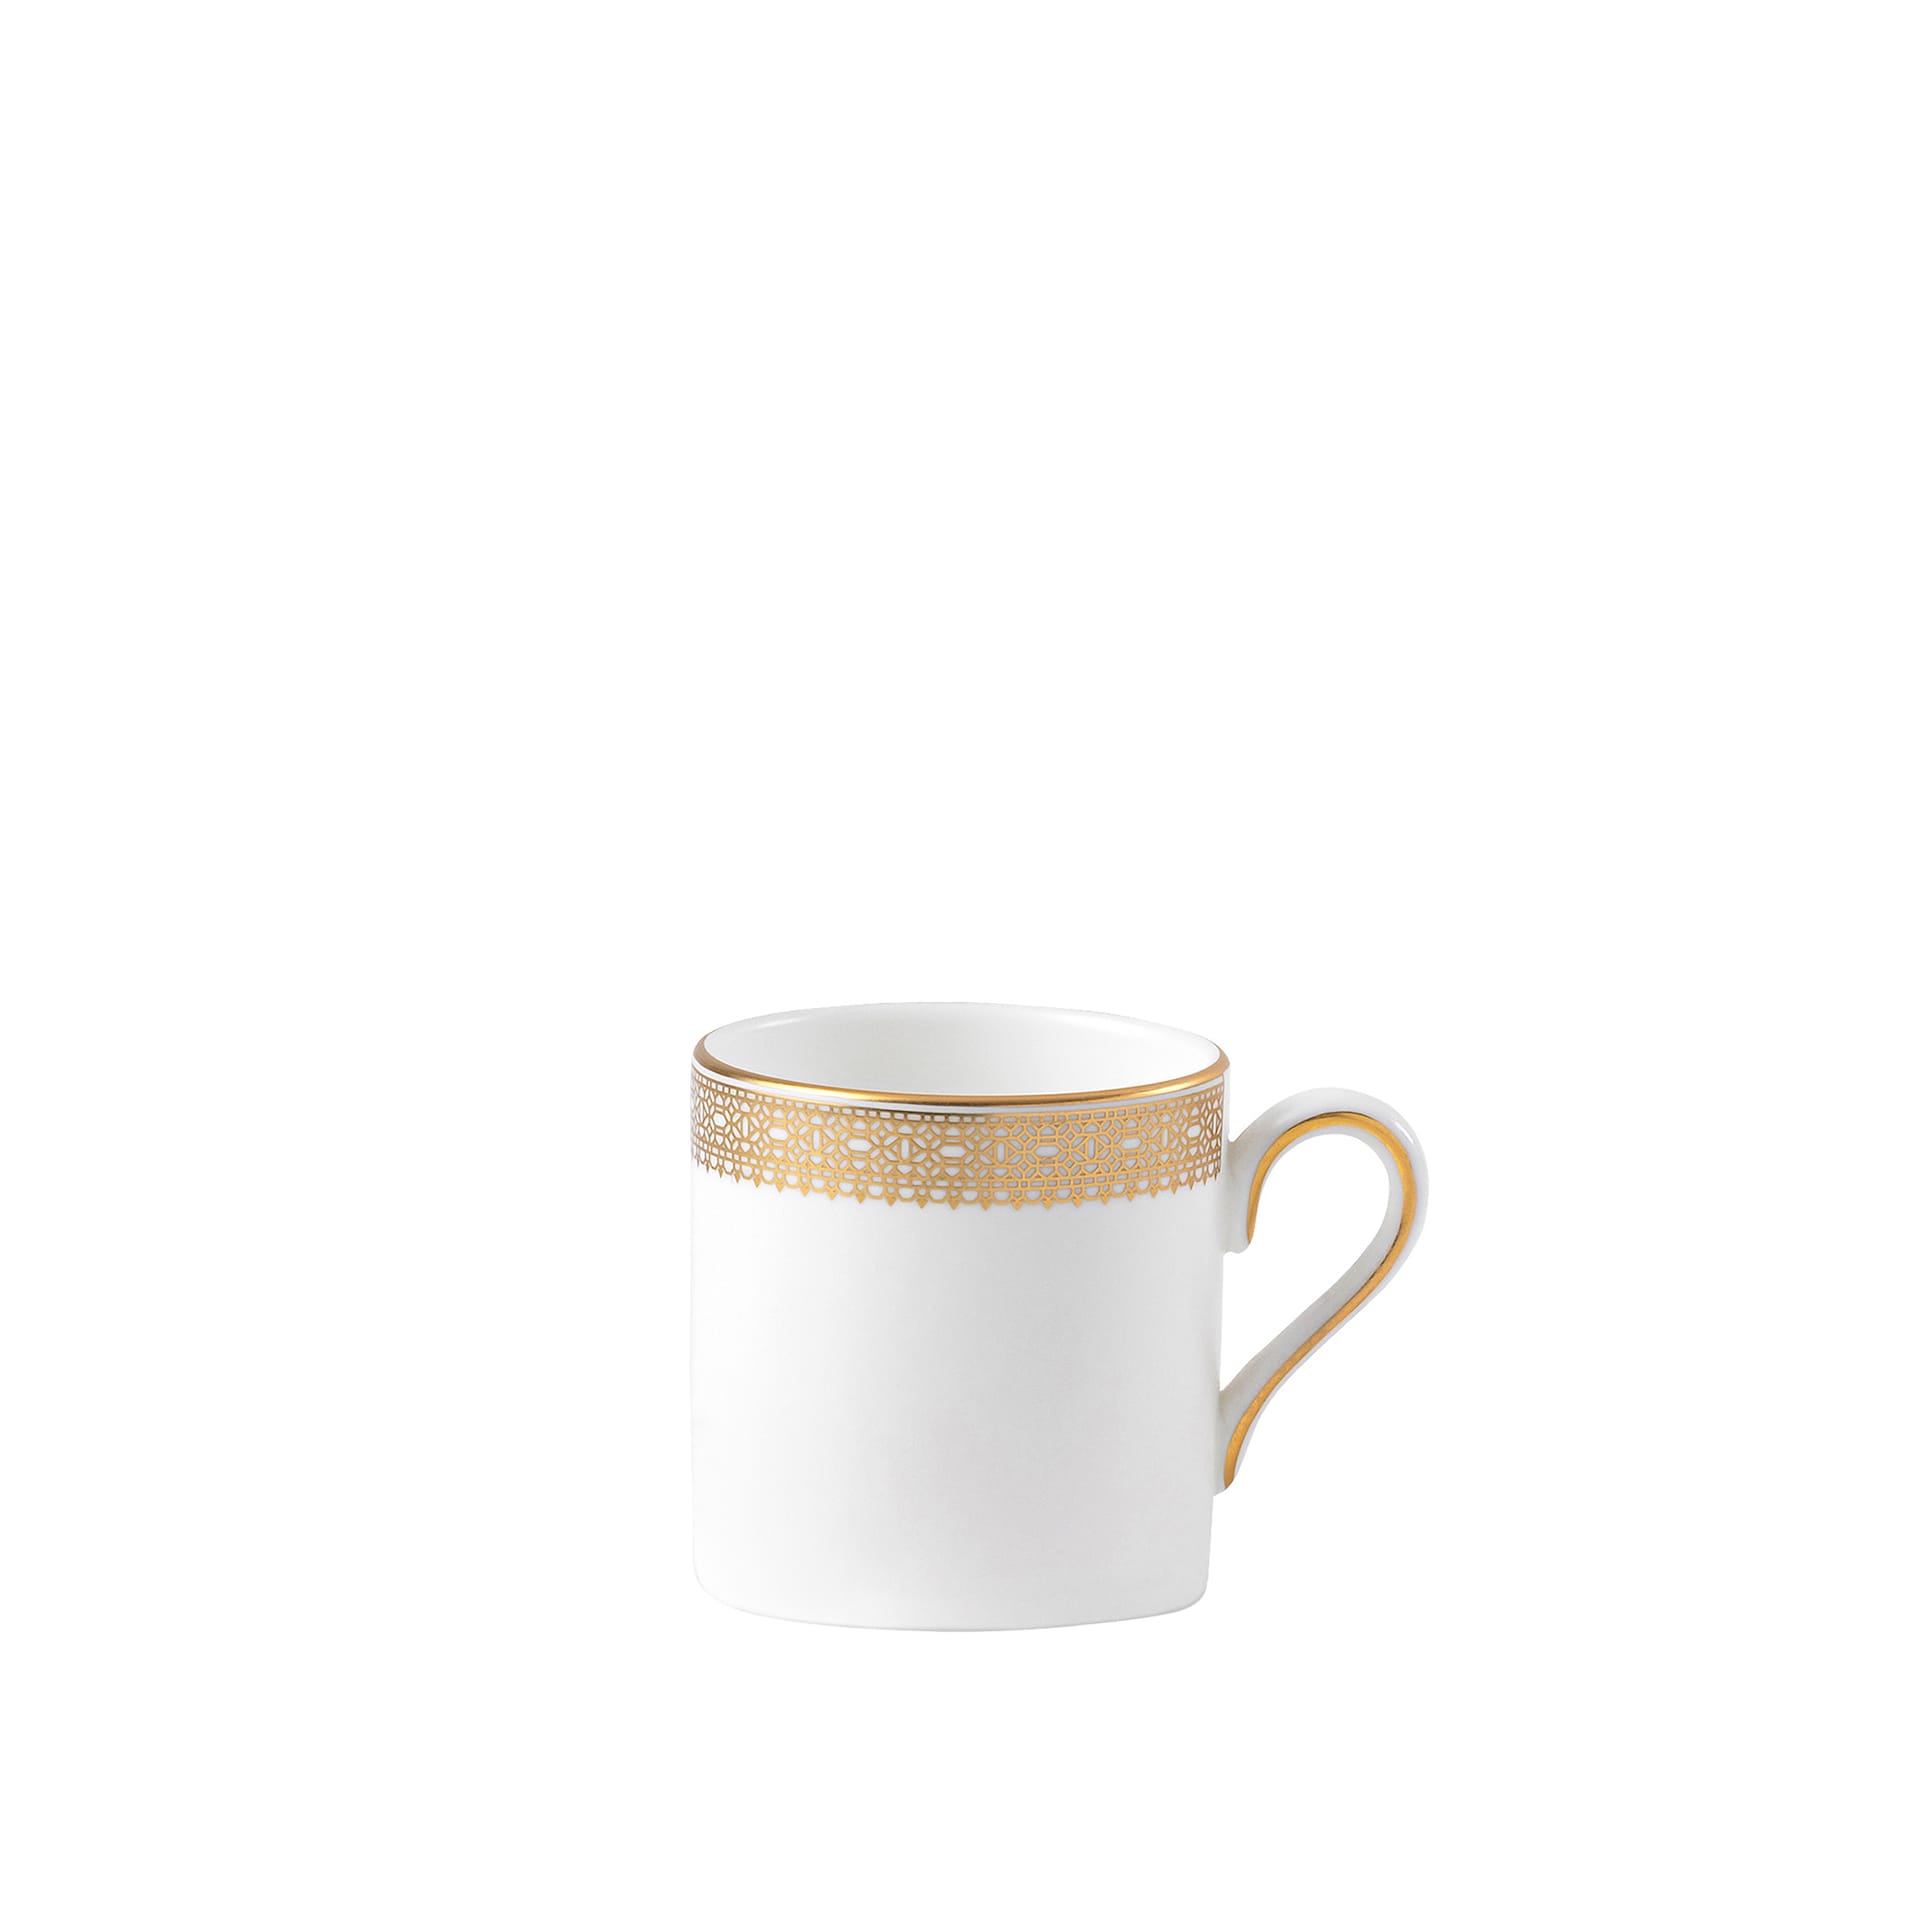 Vera Wang Lace Gold Espresso Cup - Wedgwood - NO GA